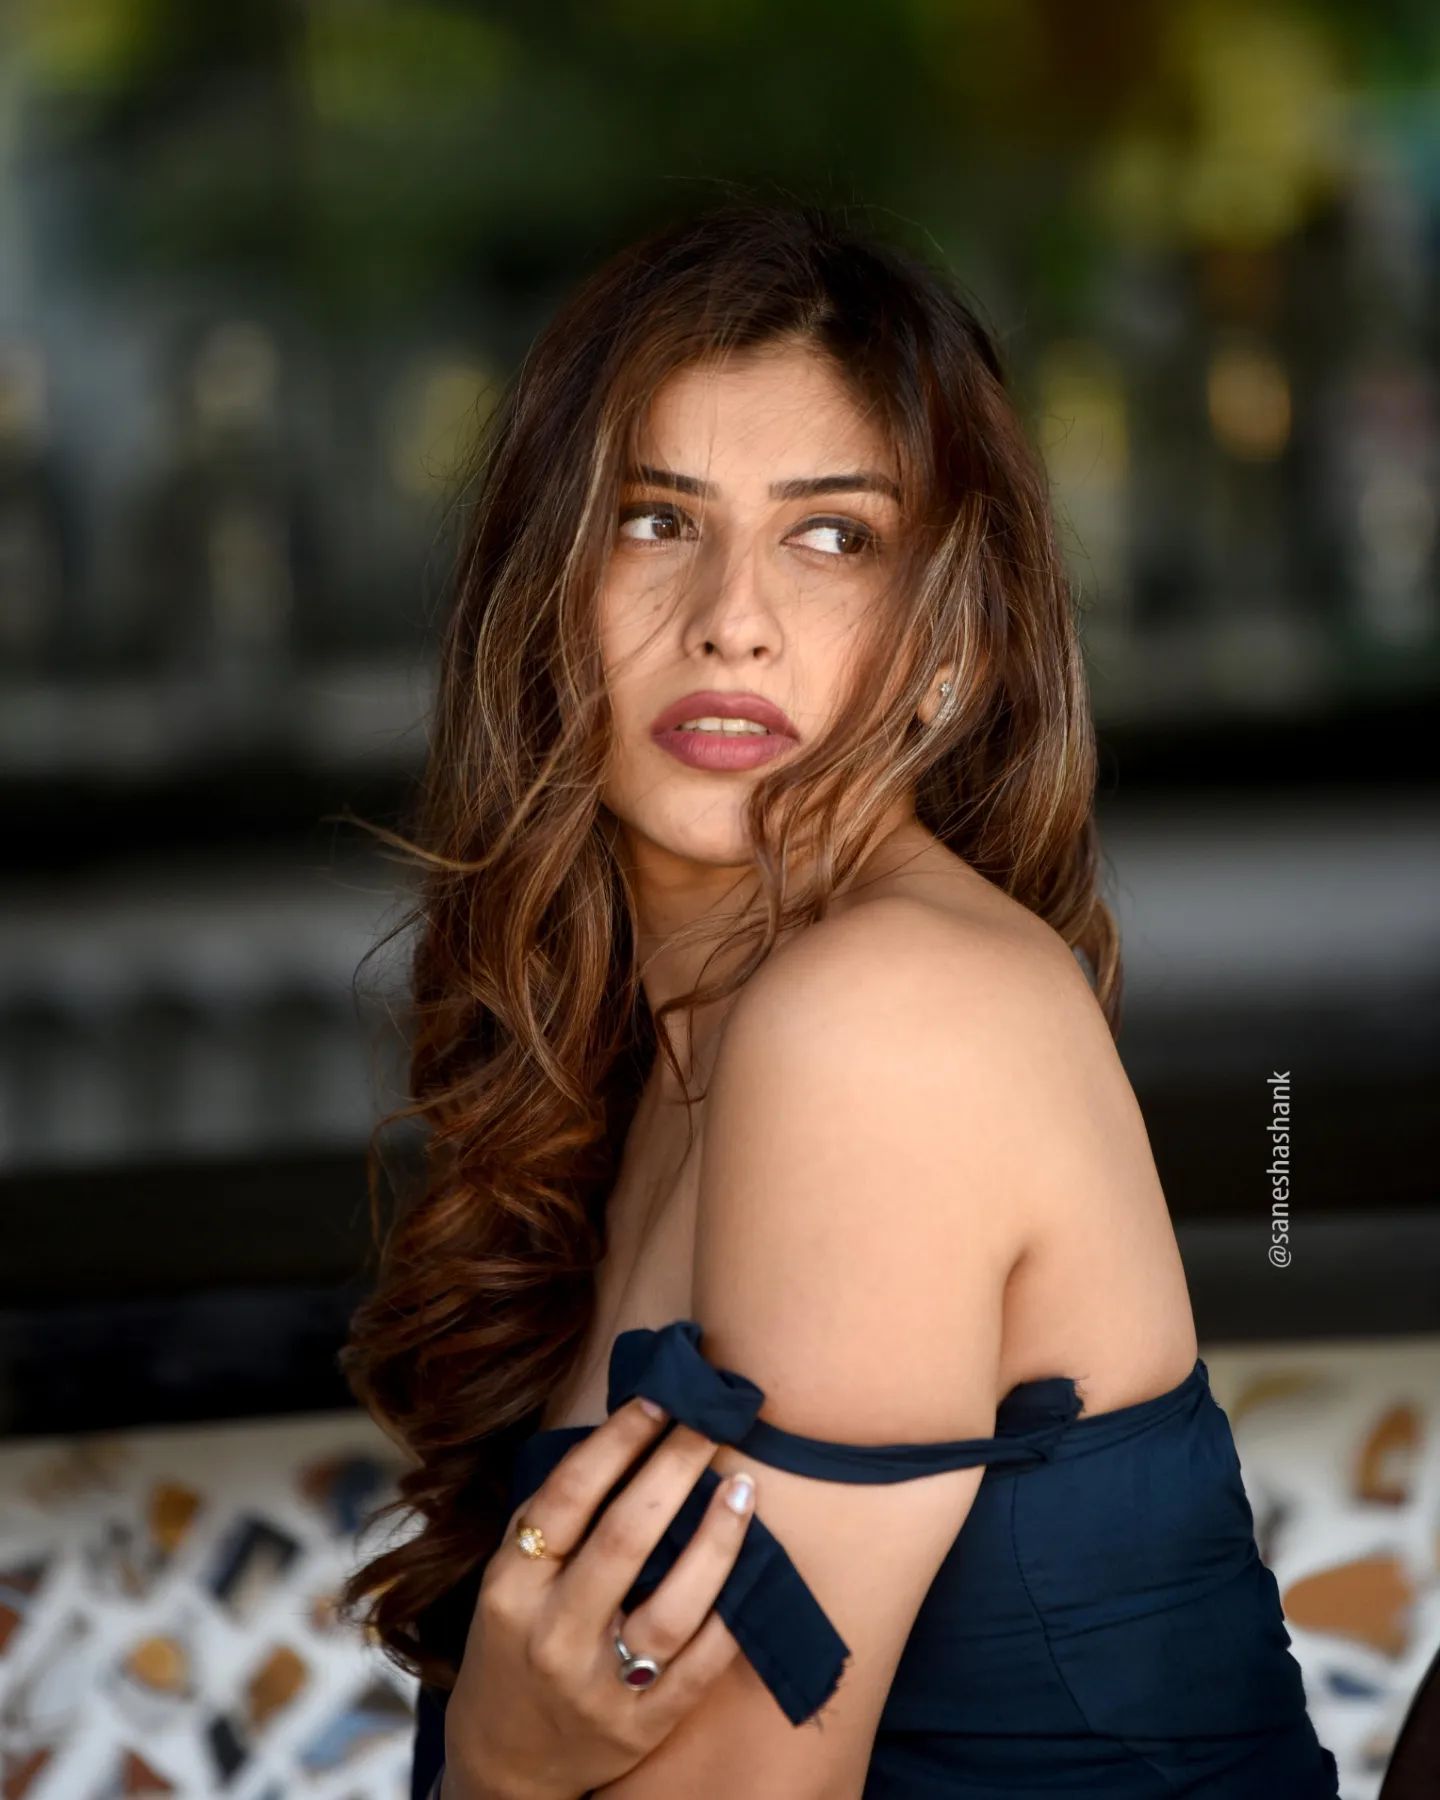 marathi actress mira jagnnath bold photoshoot